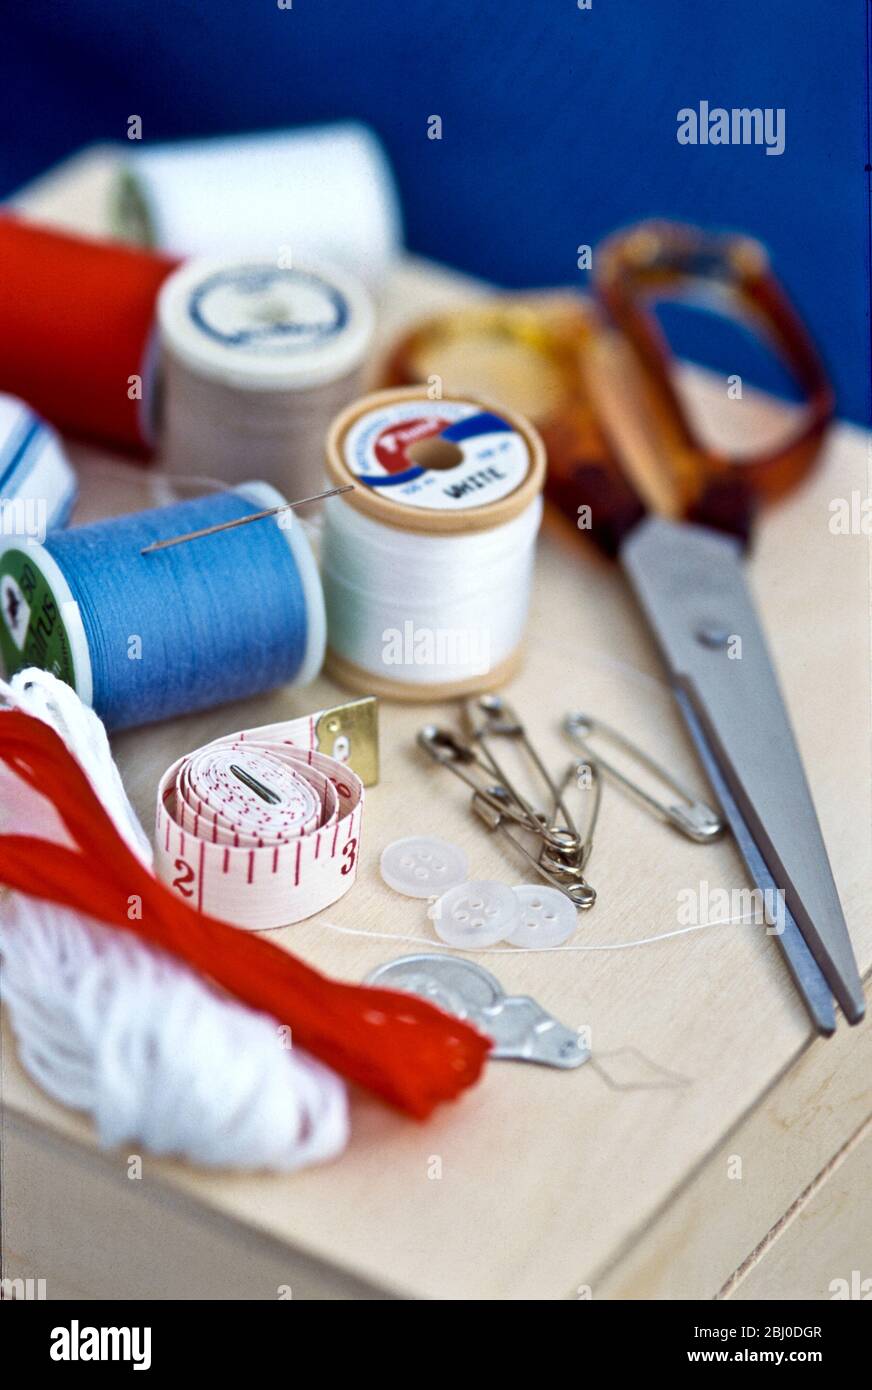 Verschiedene Teile Nähset, einschließlich Fäden, Nadeln und Scheren auf Holzkiste. - Stockfoto